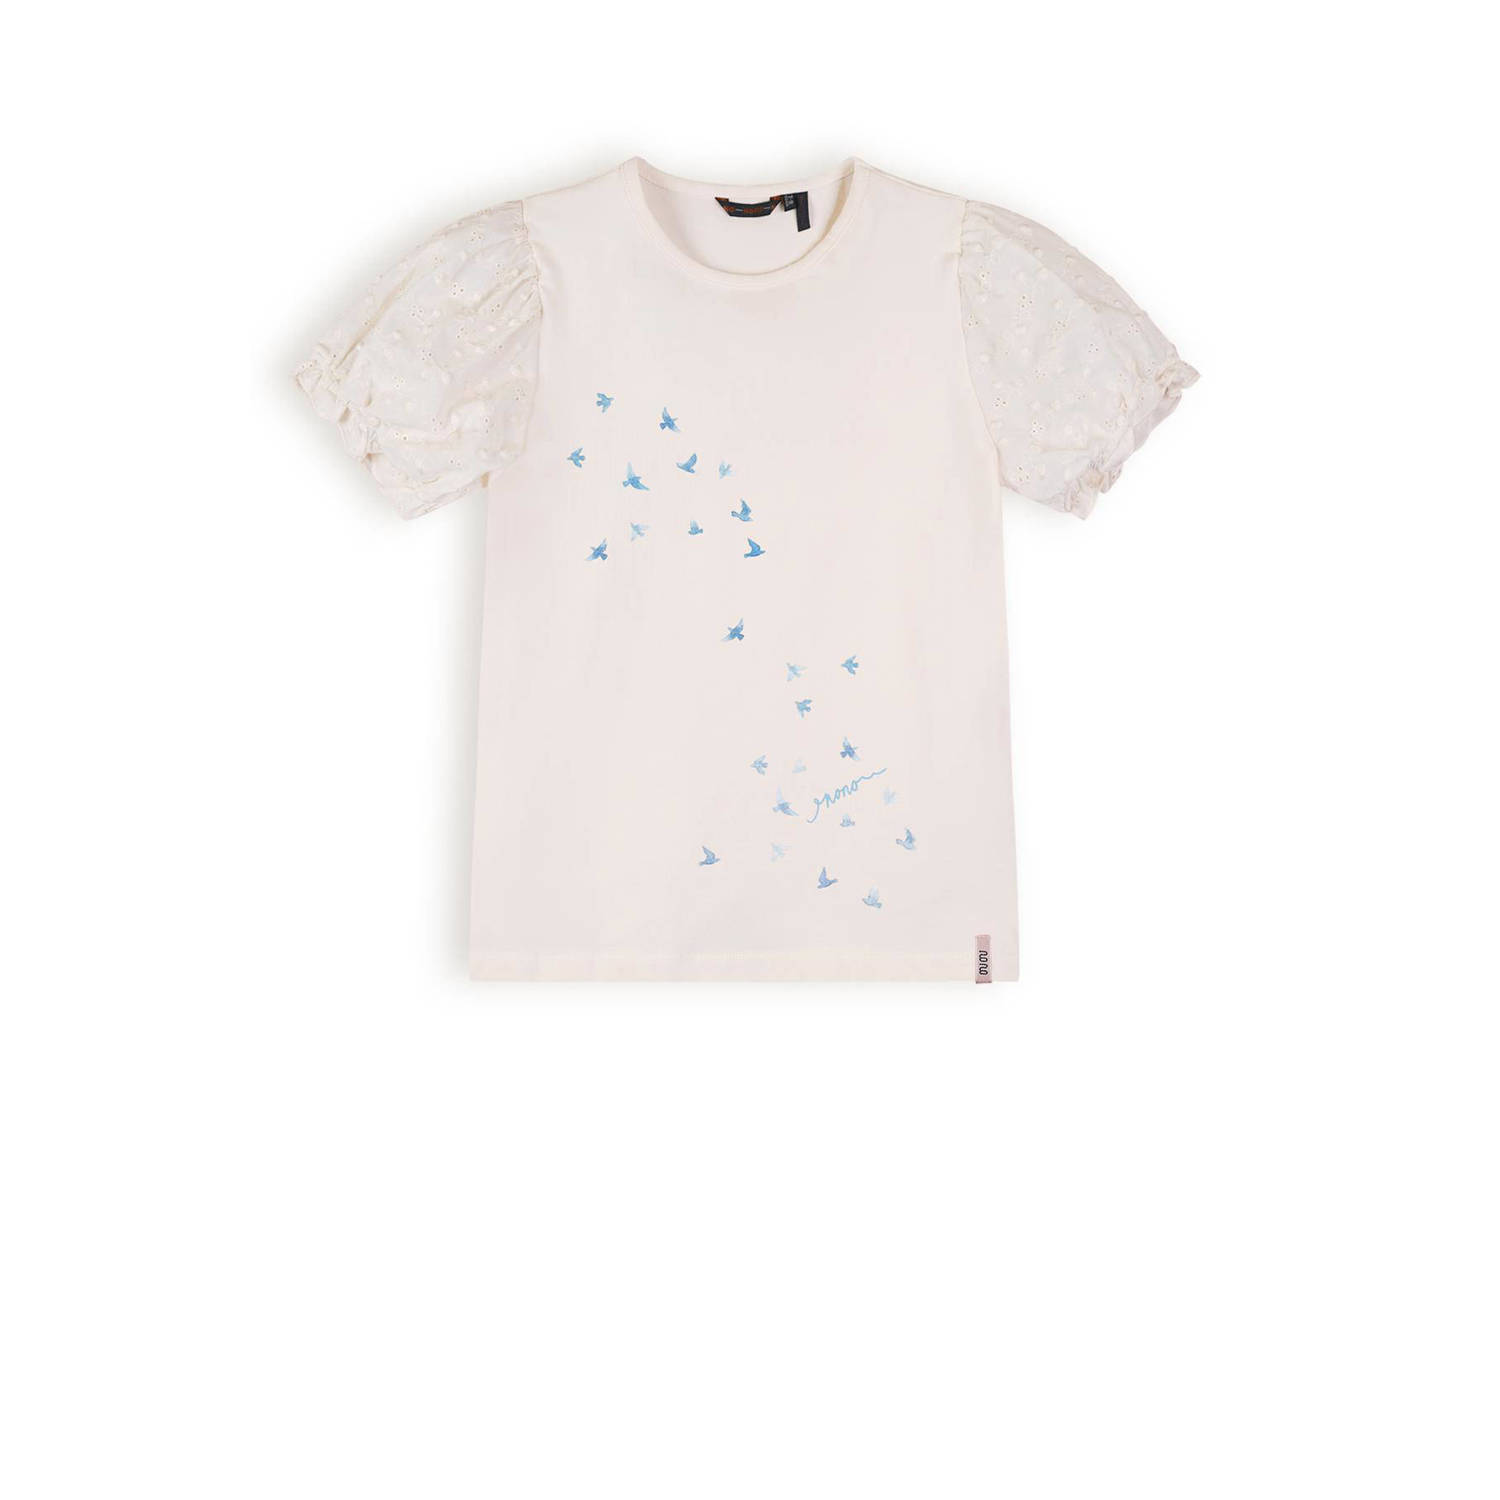 NONO T-shirt Kantal met printopdruk wit Biologisch katoen Ronde hals 122 128